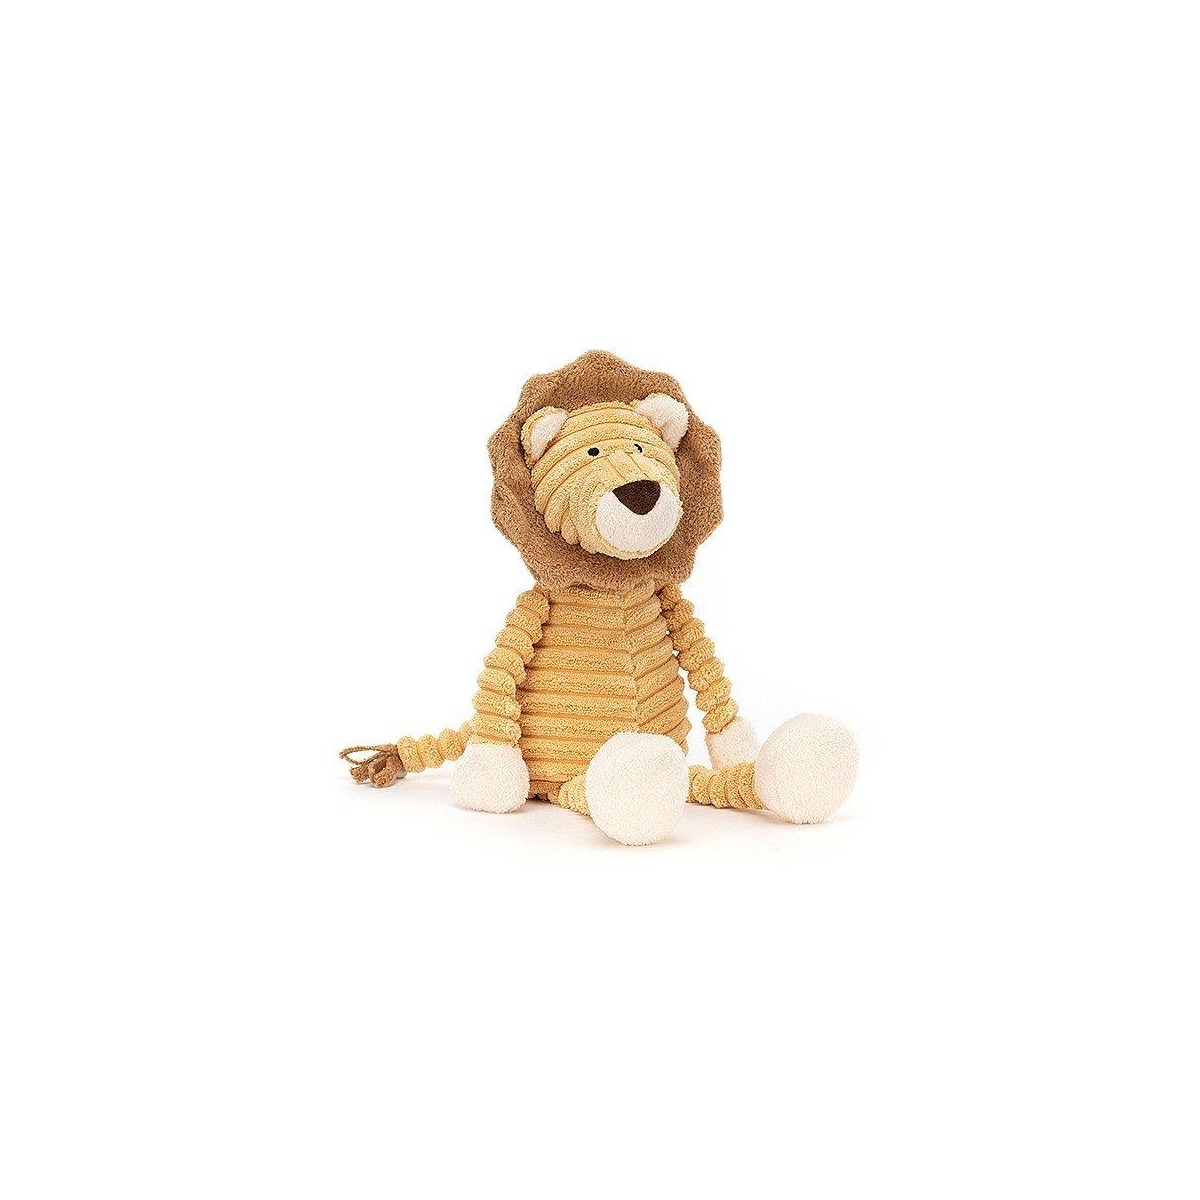 Peluche cordy roy baby lion de Jellycat